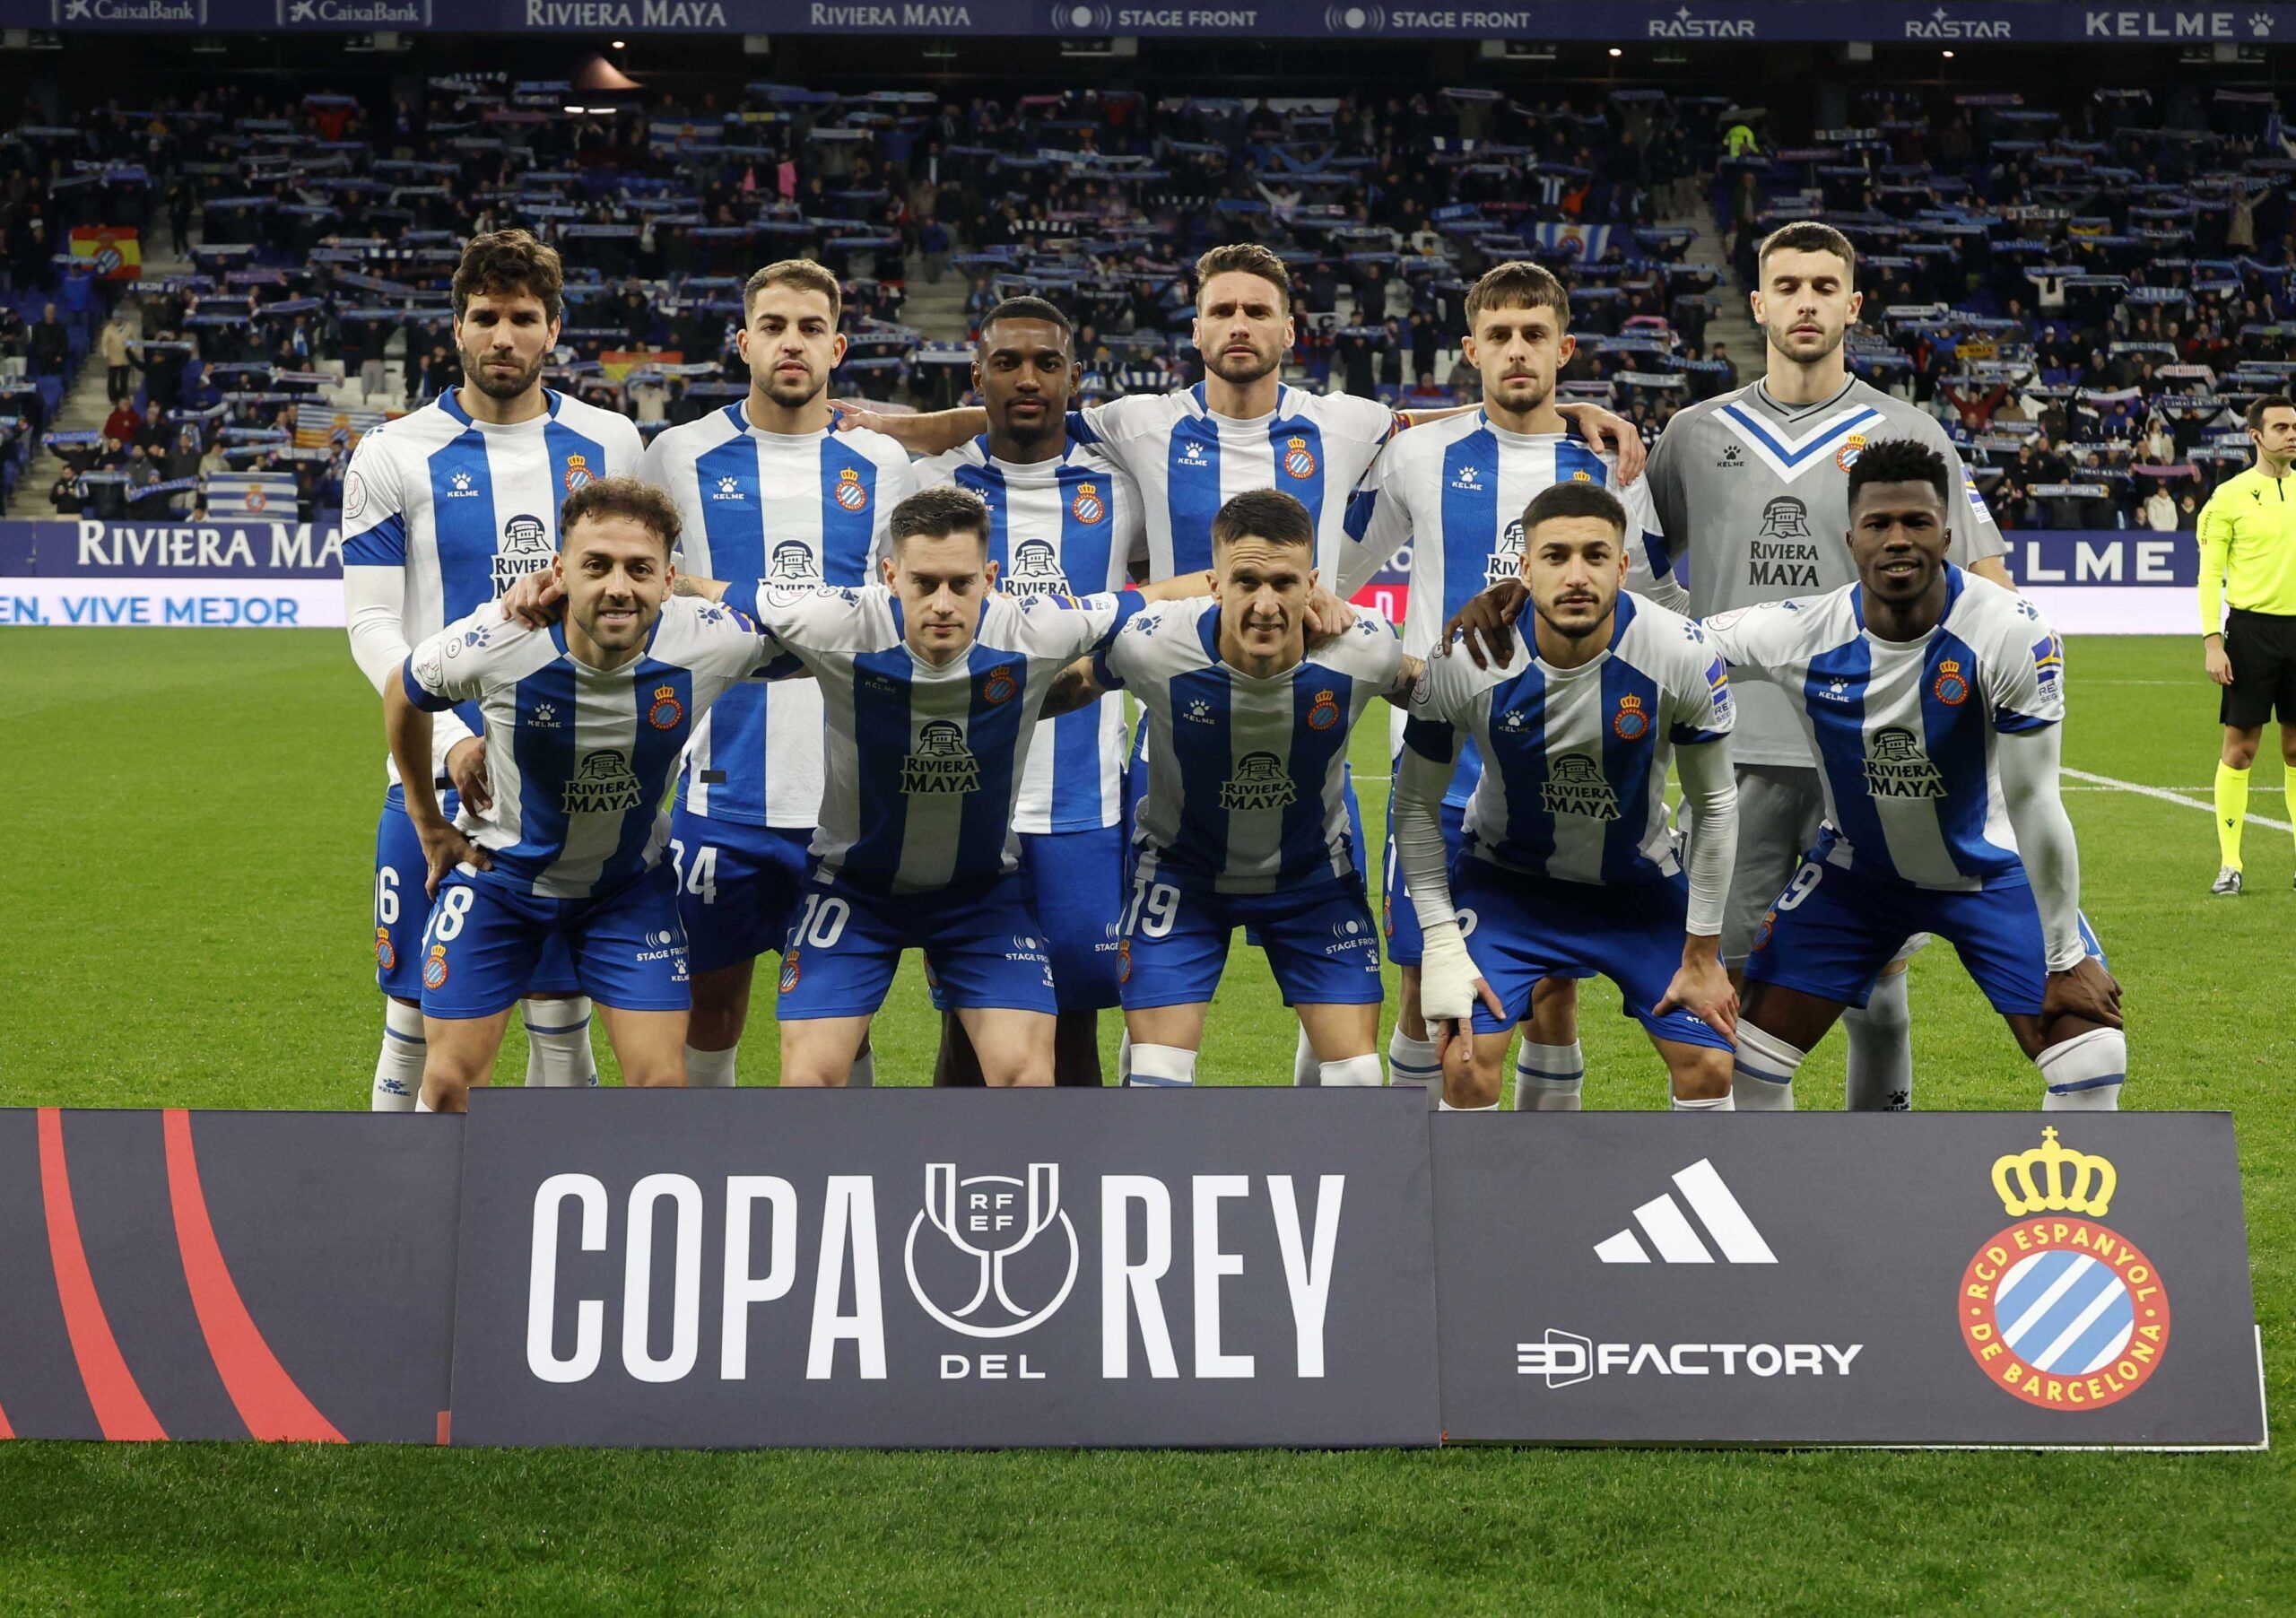 Crónica RCD Espanyol 3-1 Real Valladolid: Jofre guía en la Copa a los pericos